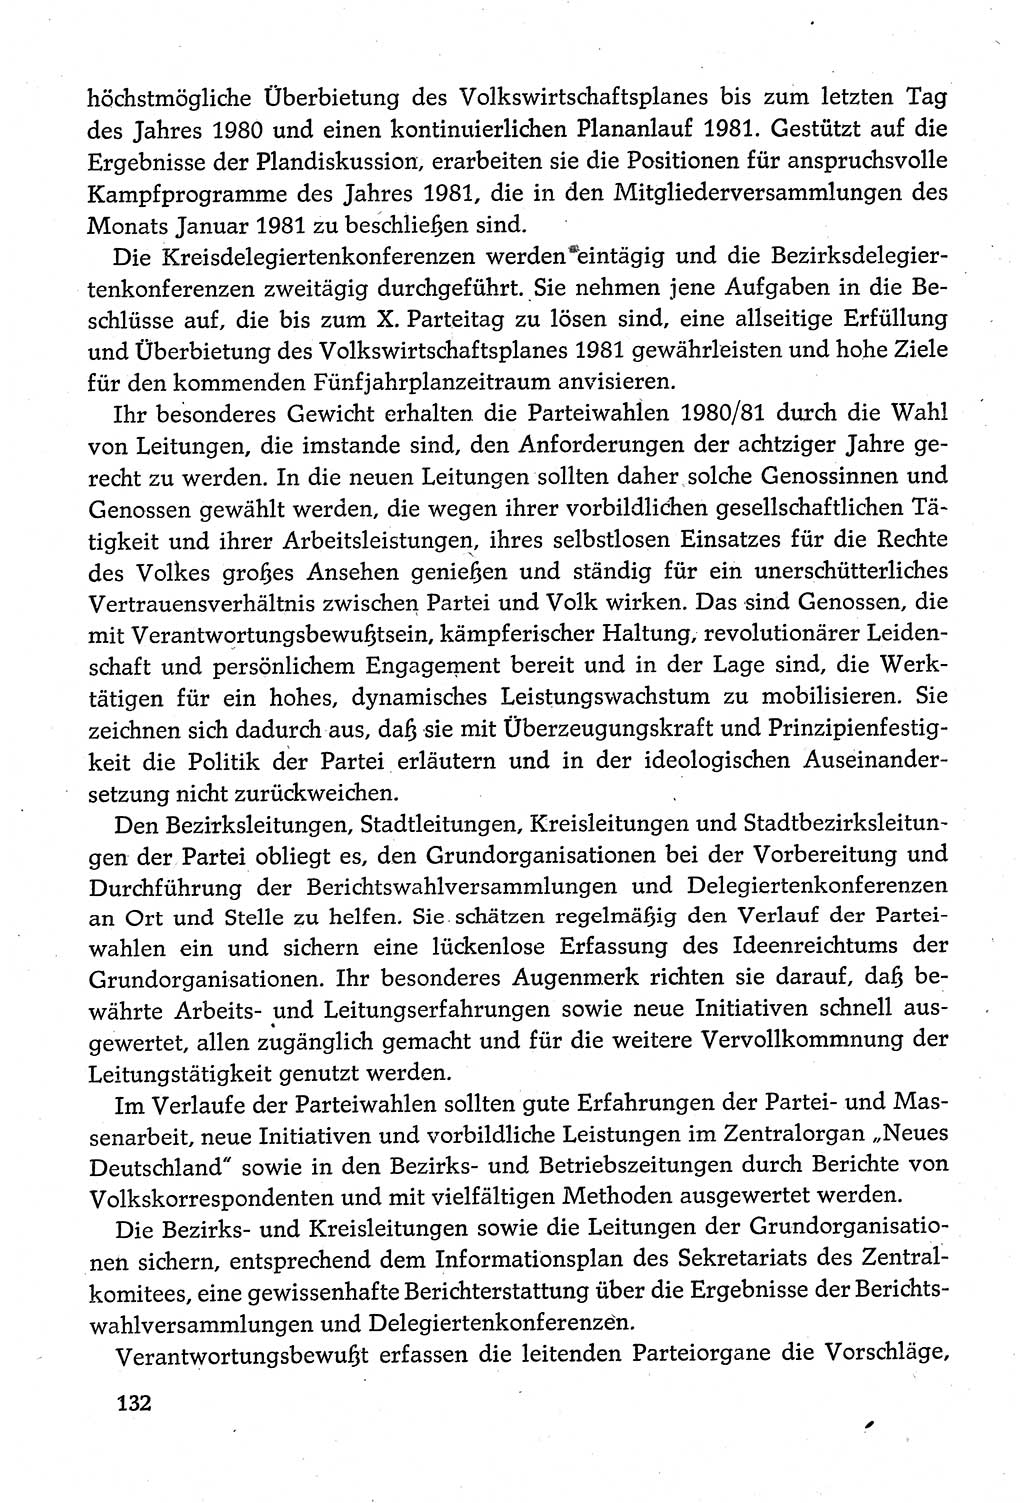 Dokumente der Sozialistischen Einheitspartei Deutschlands (SED) [Deutsche Demokratische Republik (DDR)] 1980-1981, Seite 132 (Dok. SED DDR 1980-1981, S. 132)